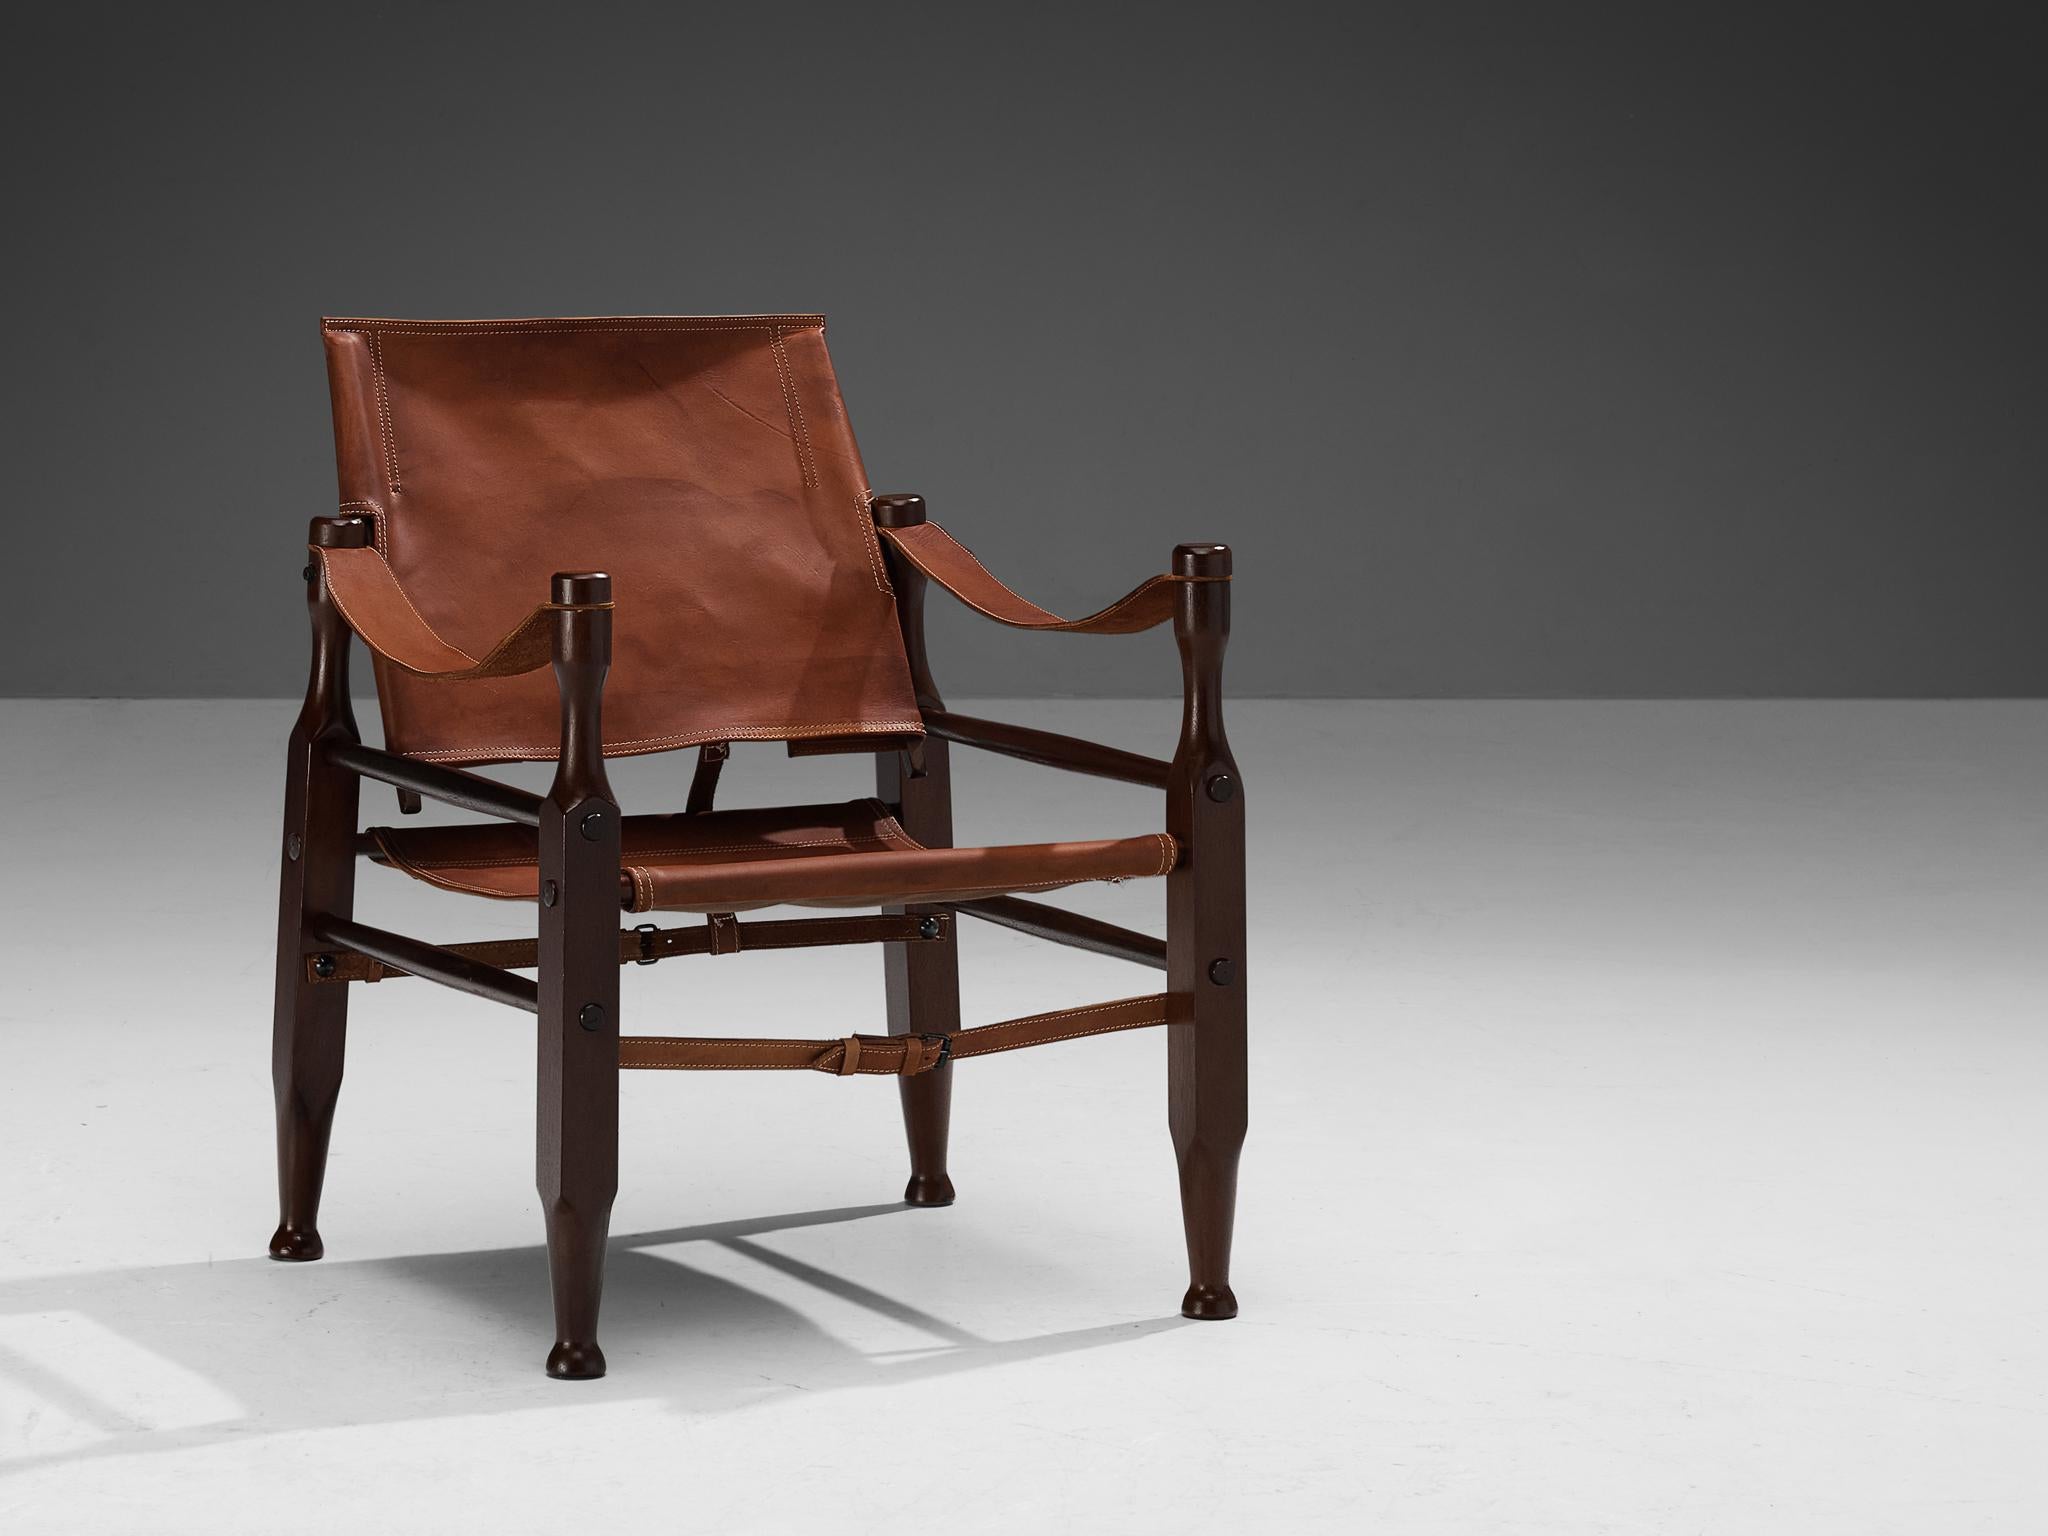 Chaise longue Safari, cuir, hêtre teinté, métal chromé, Europe, 1970

Superbe chaise longue safari recouverte d'un revêtement original en cuir naturel brun cognac. La chaise présente des lignes très élégantes et bien conçues, en combinaison avec